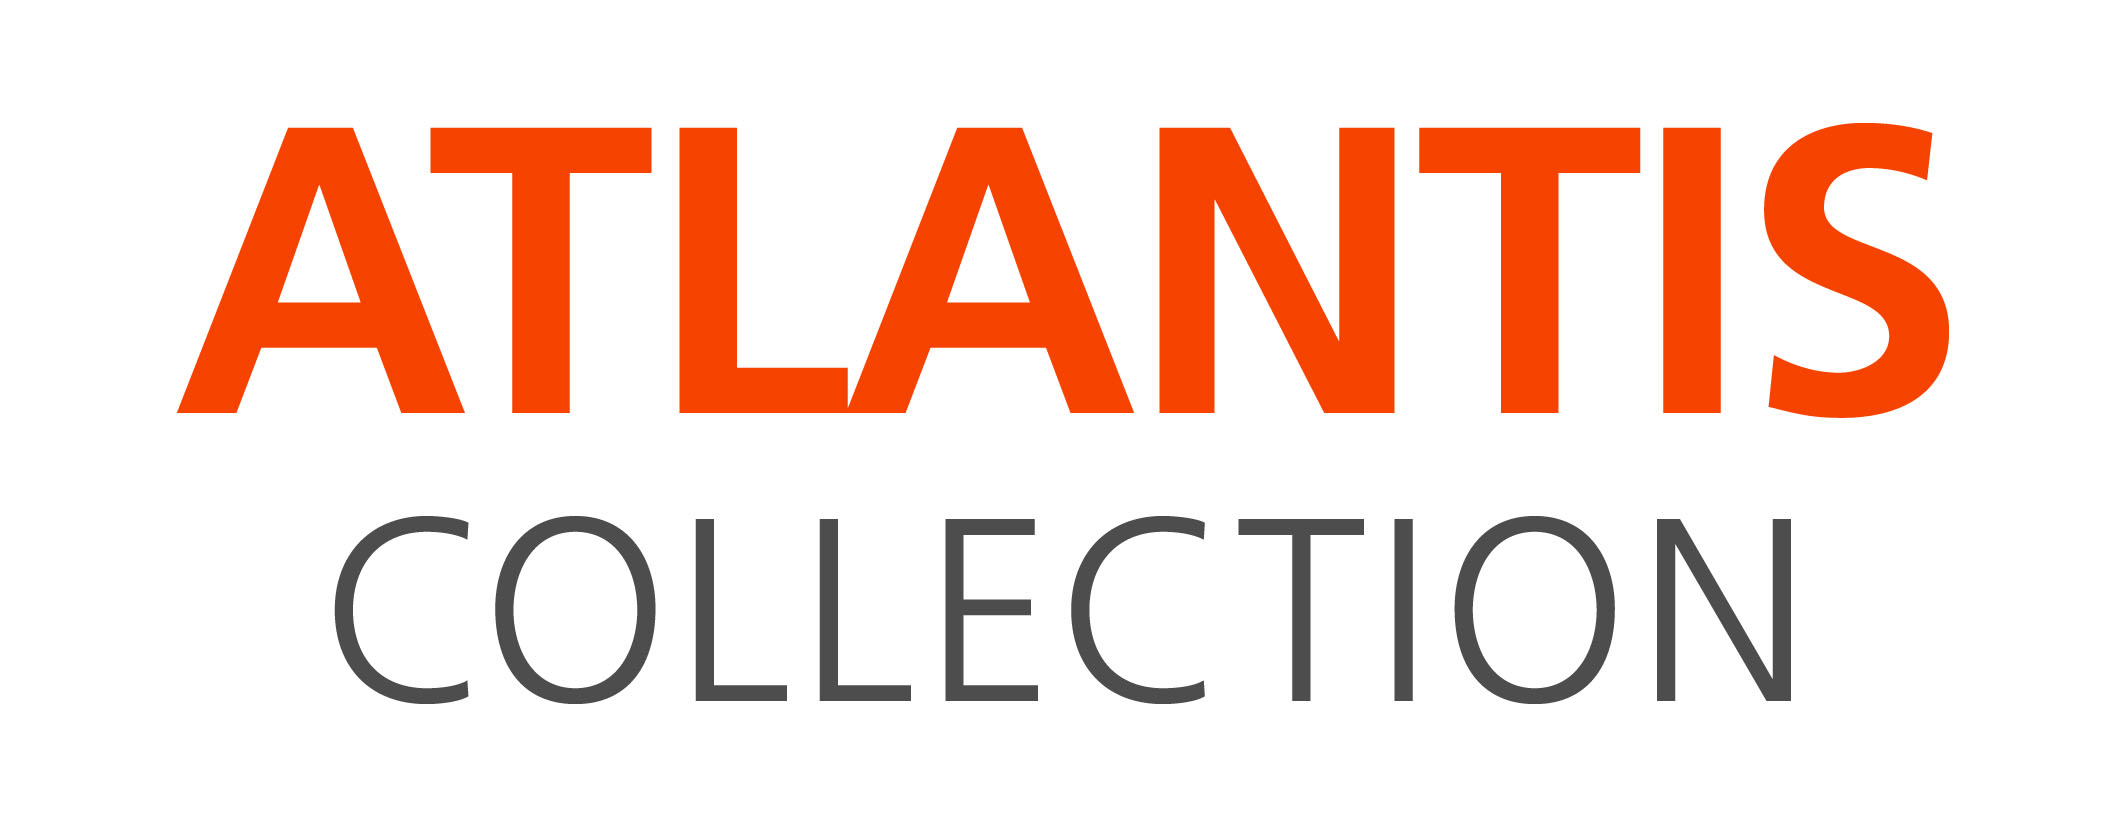 Atlantis Collection